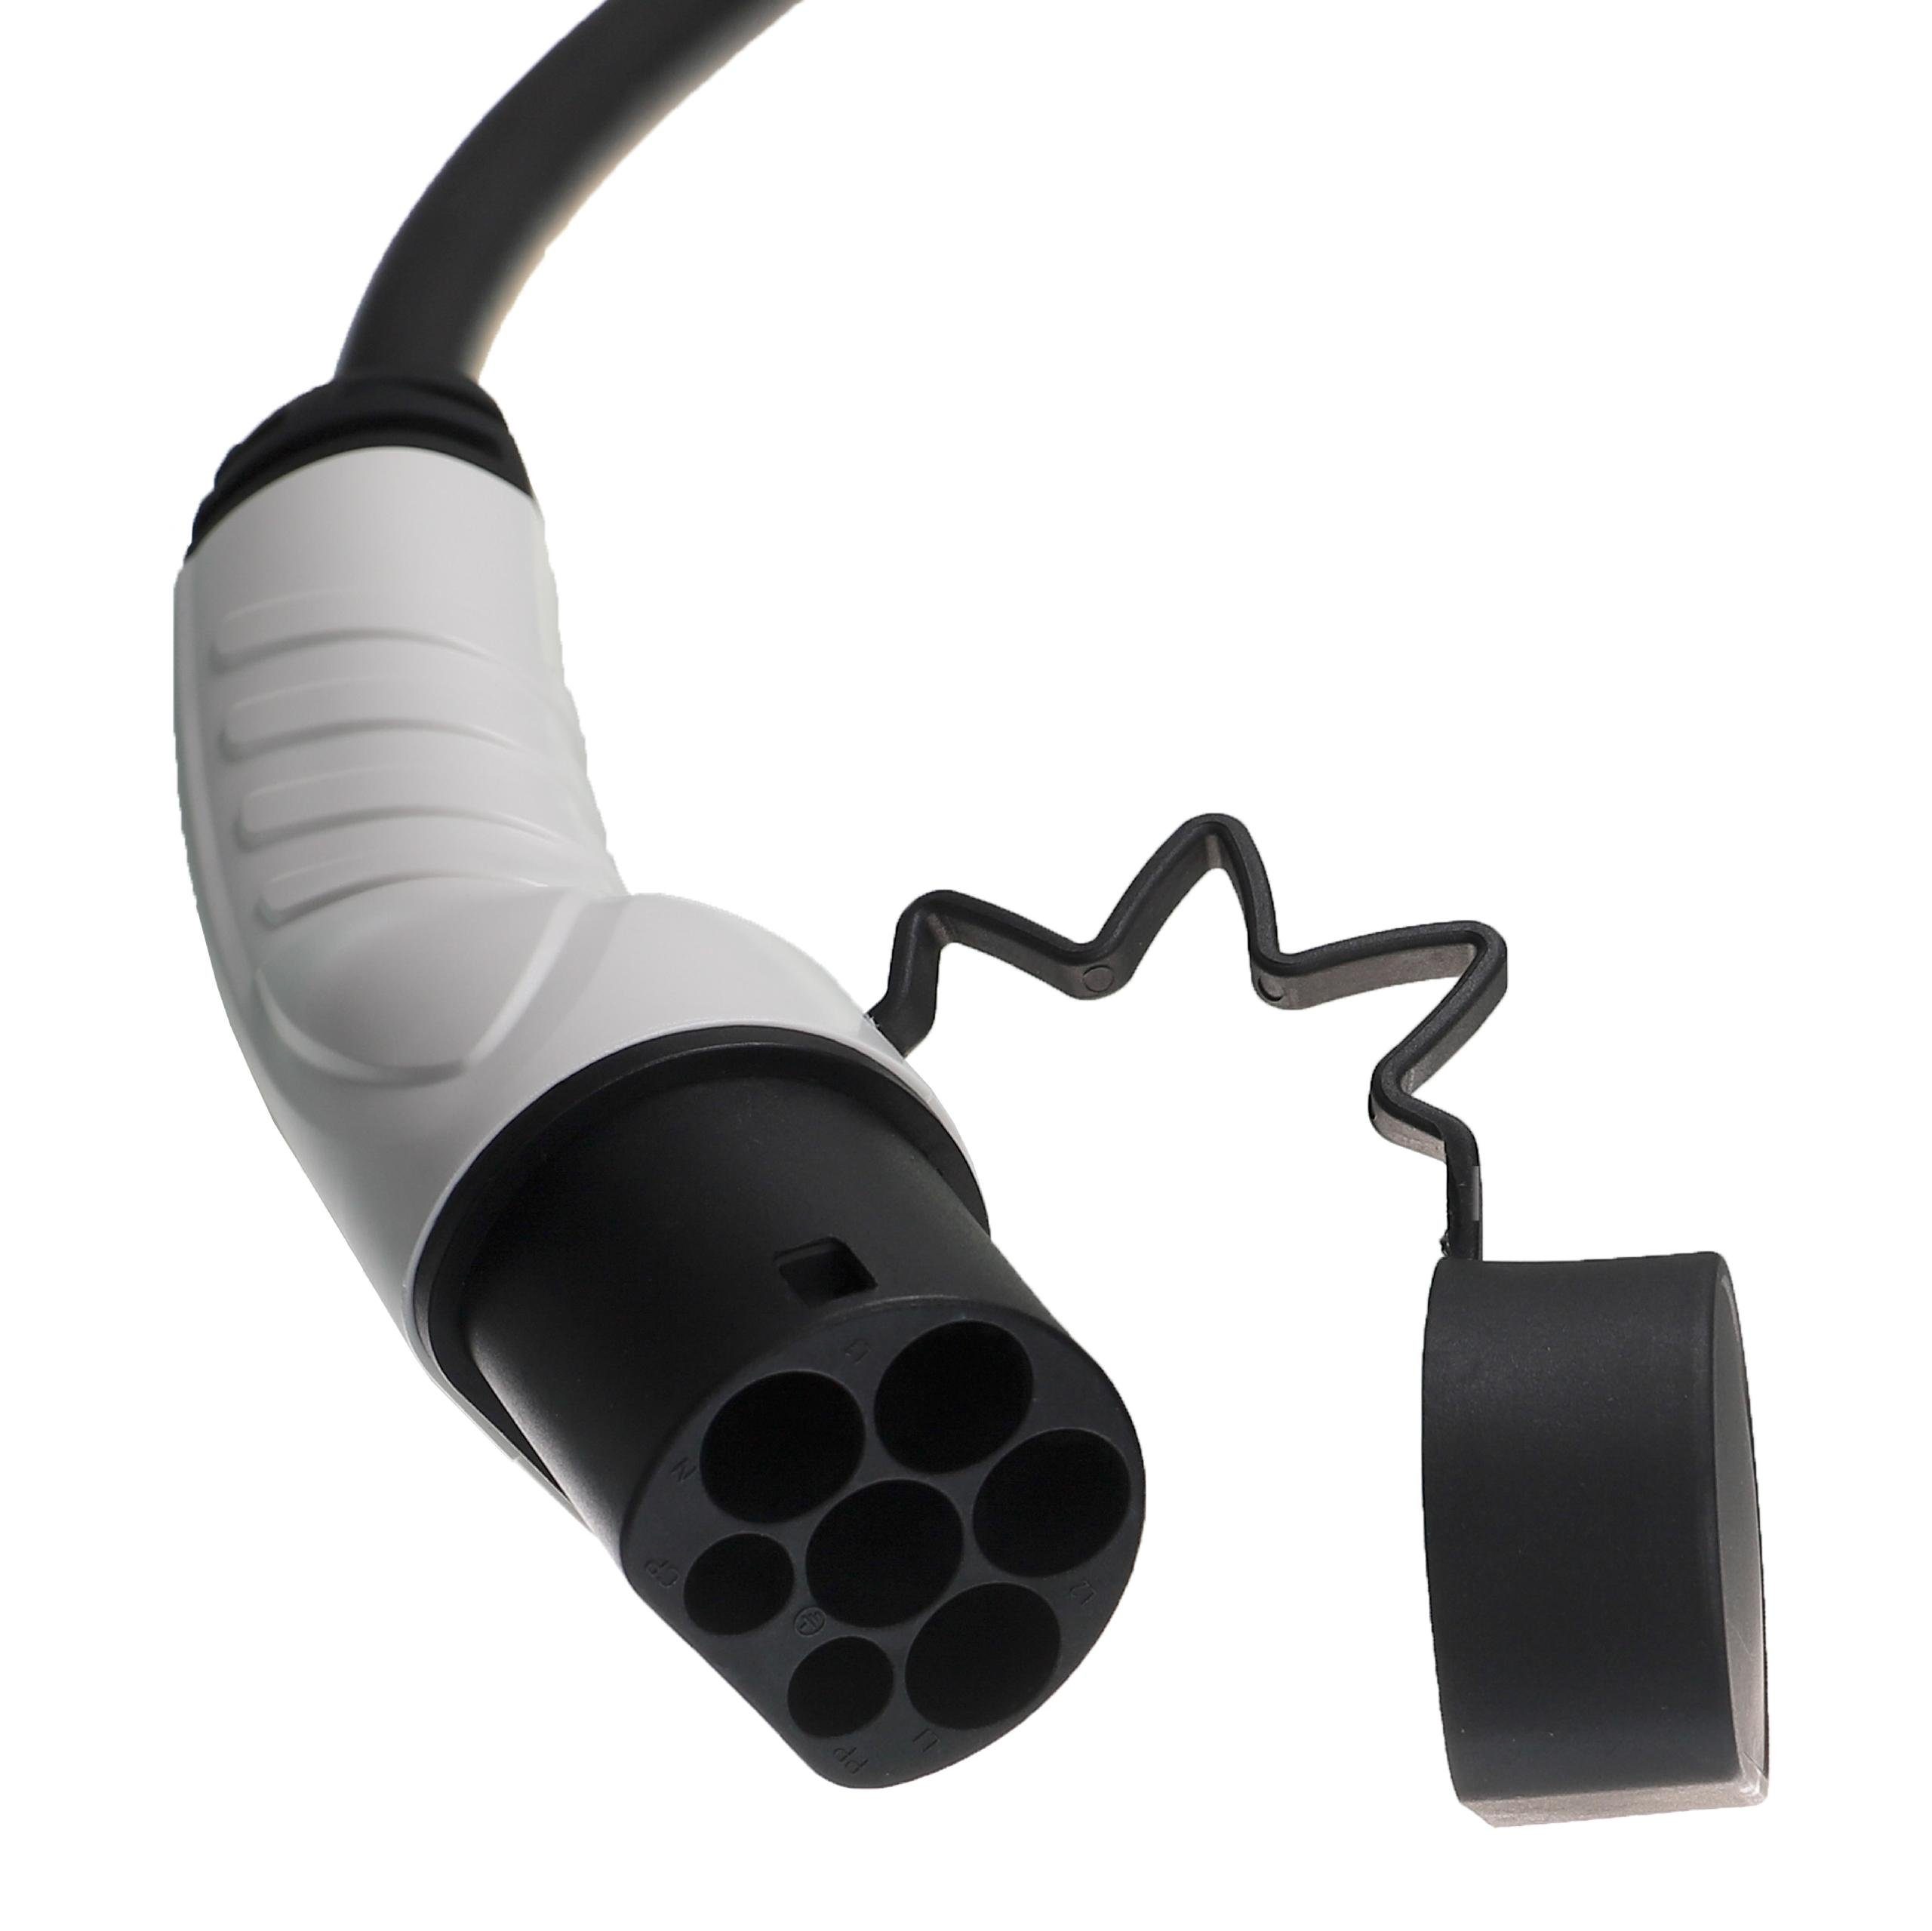 vhbw Elektro-Kabel für passend e-Spacetourer Plug-in-Hybrid Elektroauto Citroen /